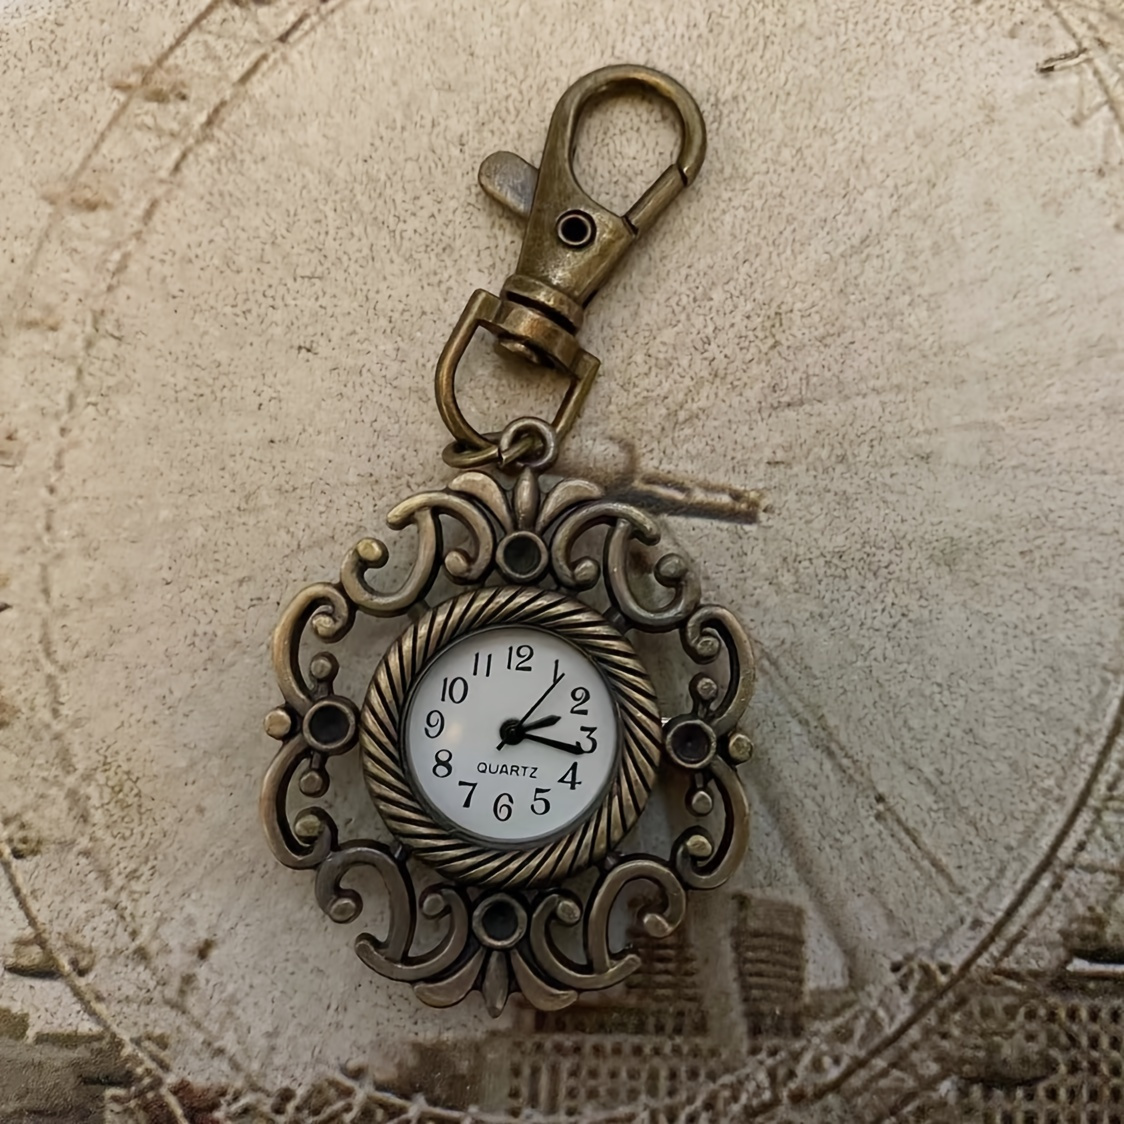 Reloj de bolsillo vintage transparente grande para hombre y mujer, reloj de  bolsillo con llavero, reloj de cuarzo para estudiantes, relojes de